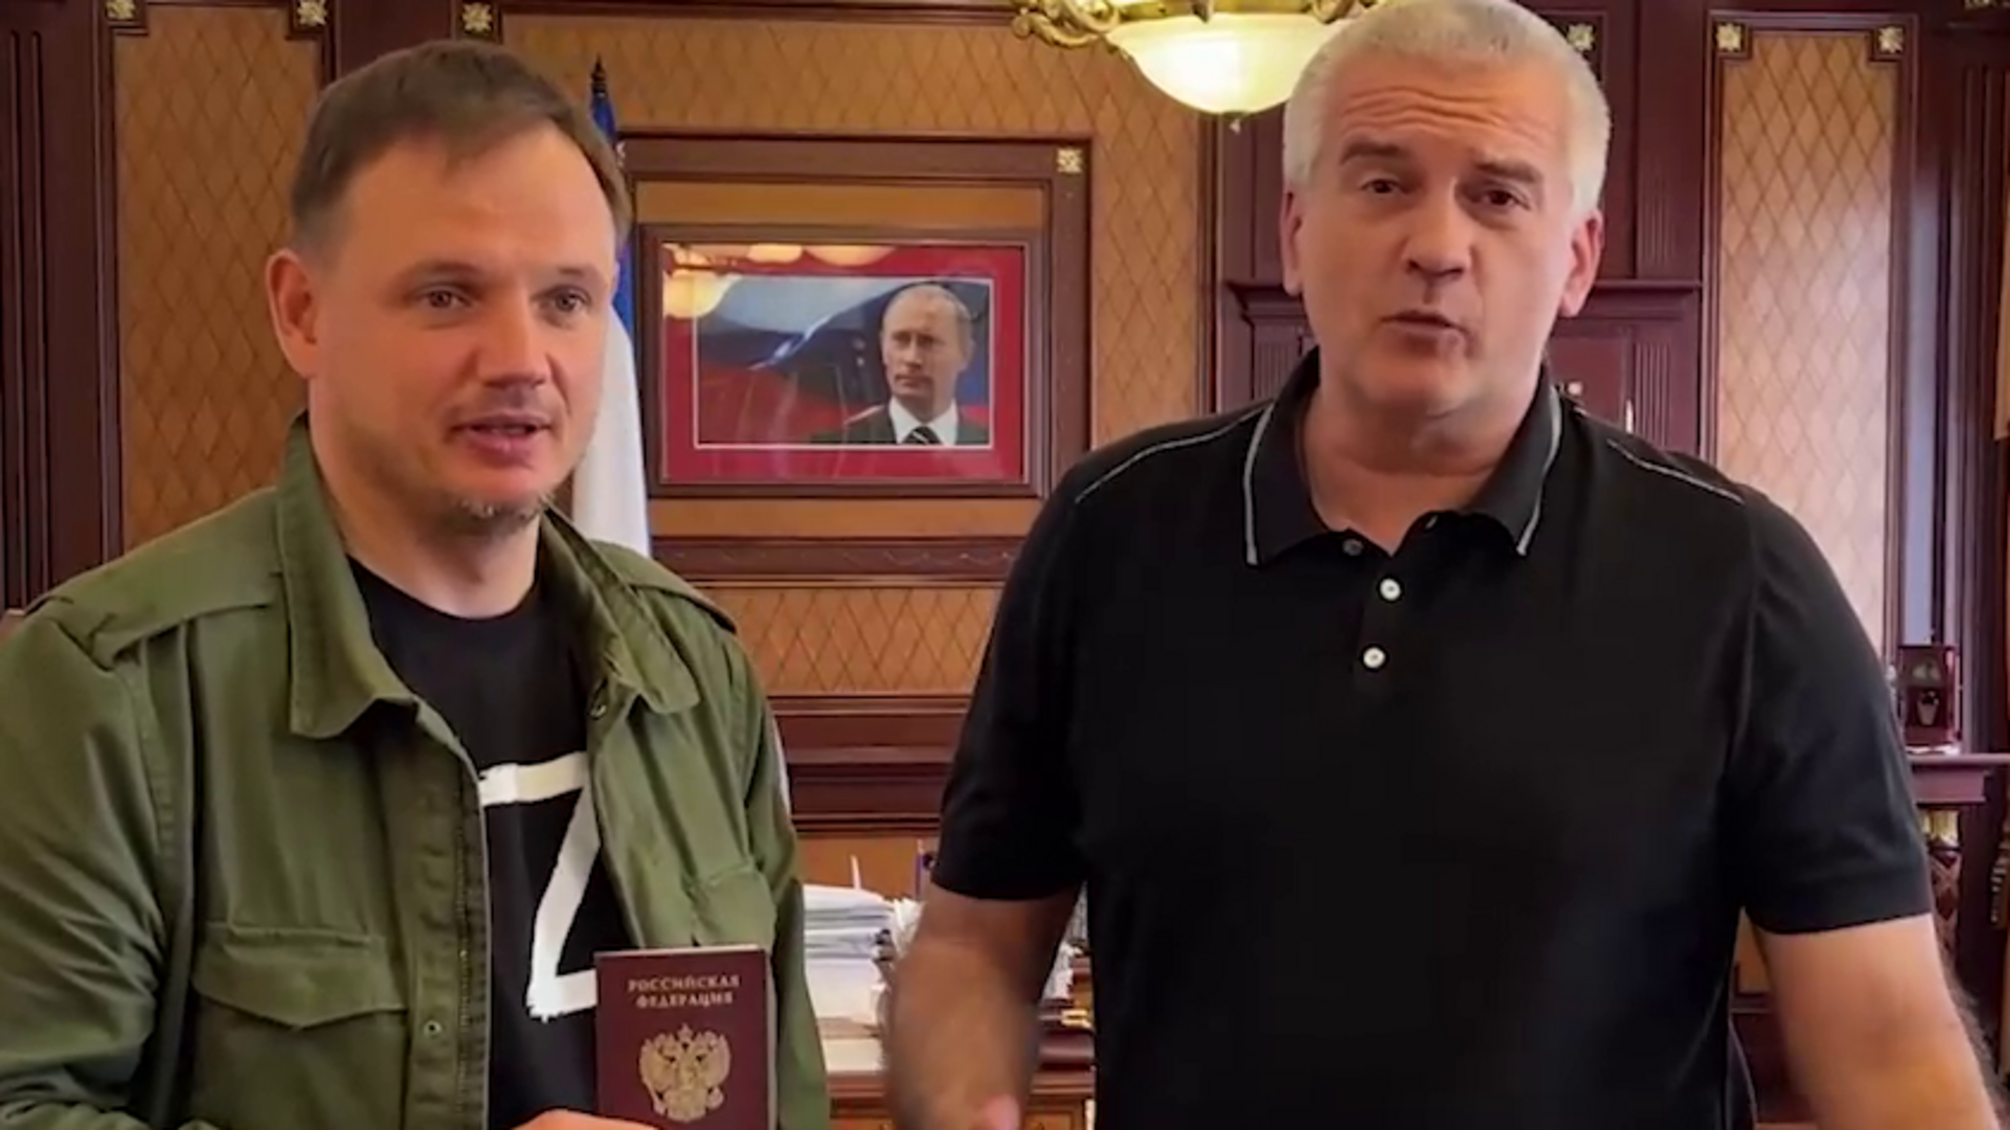 'Все должны служить россии': коллаборант Стремоусов получил паспорт рф